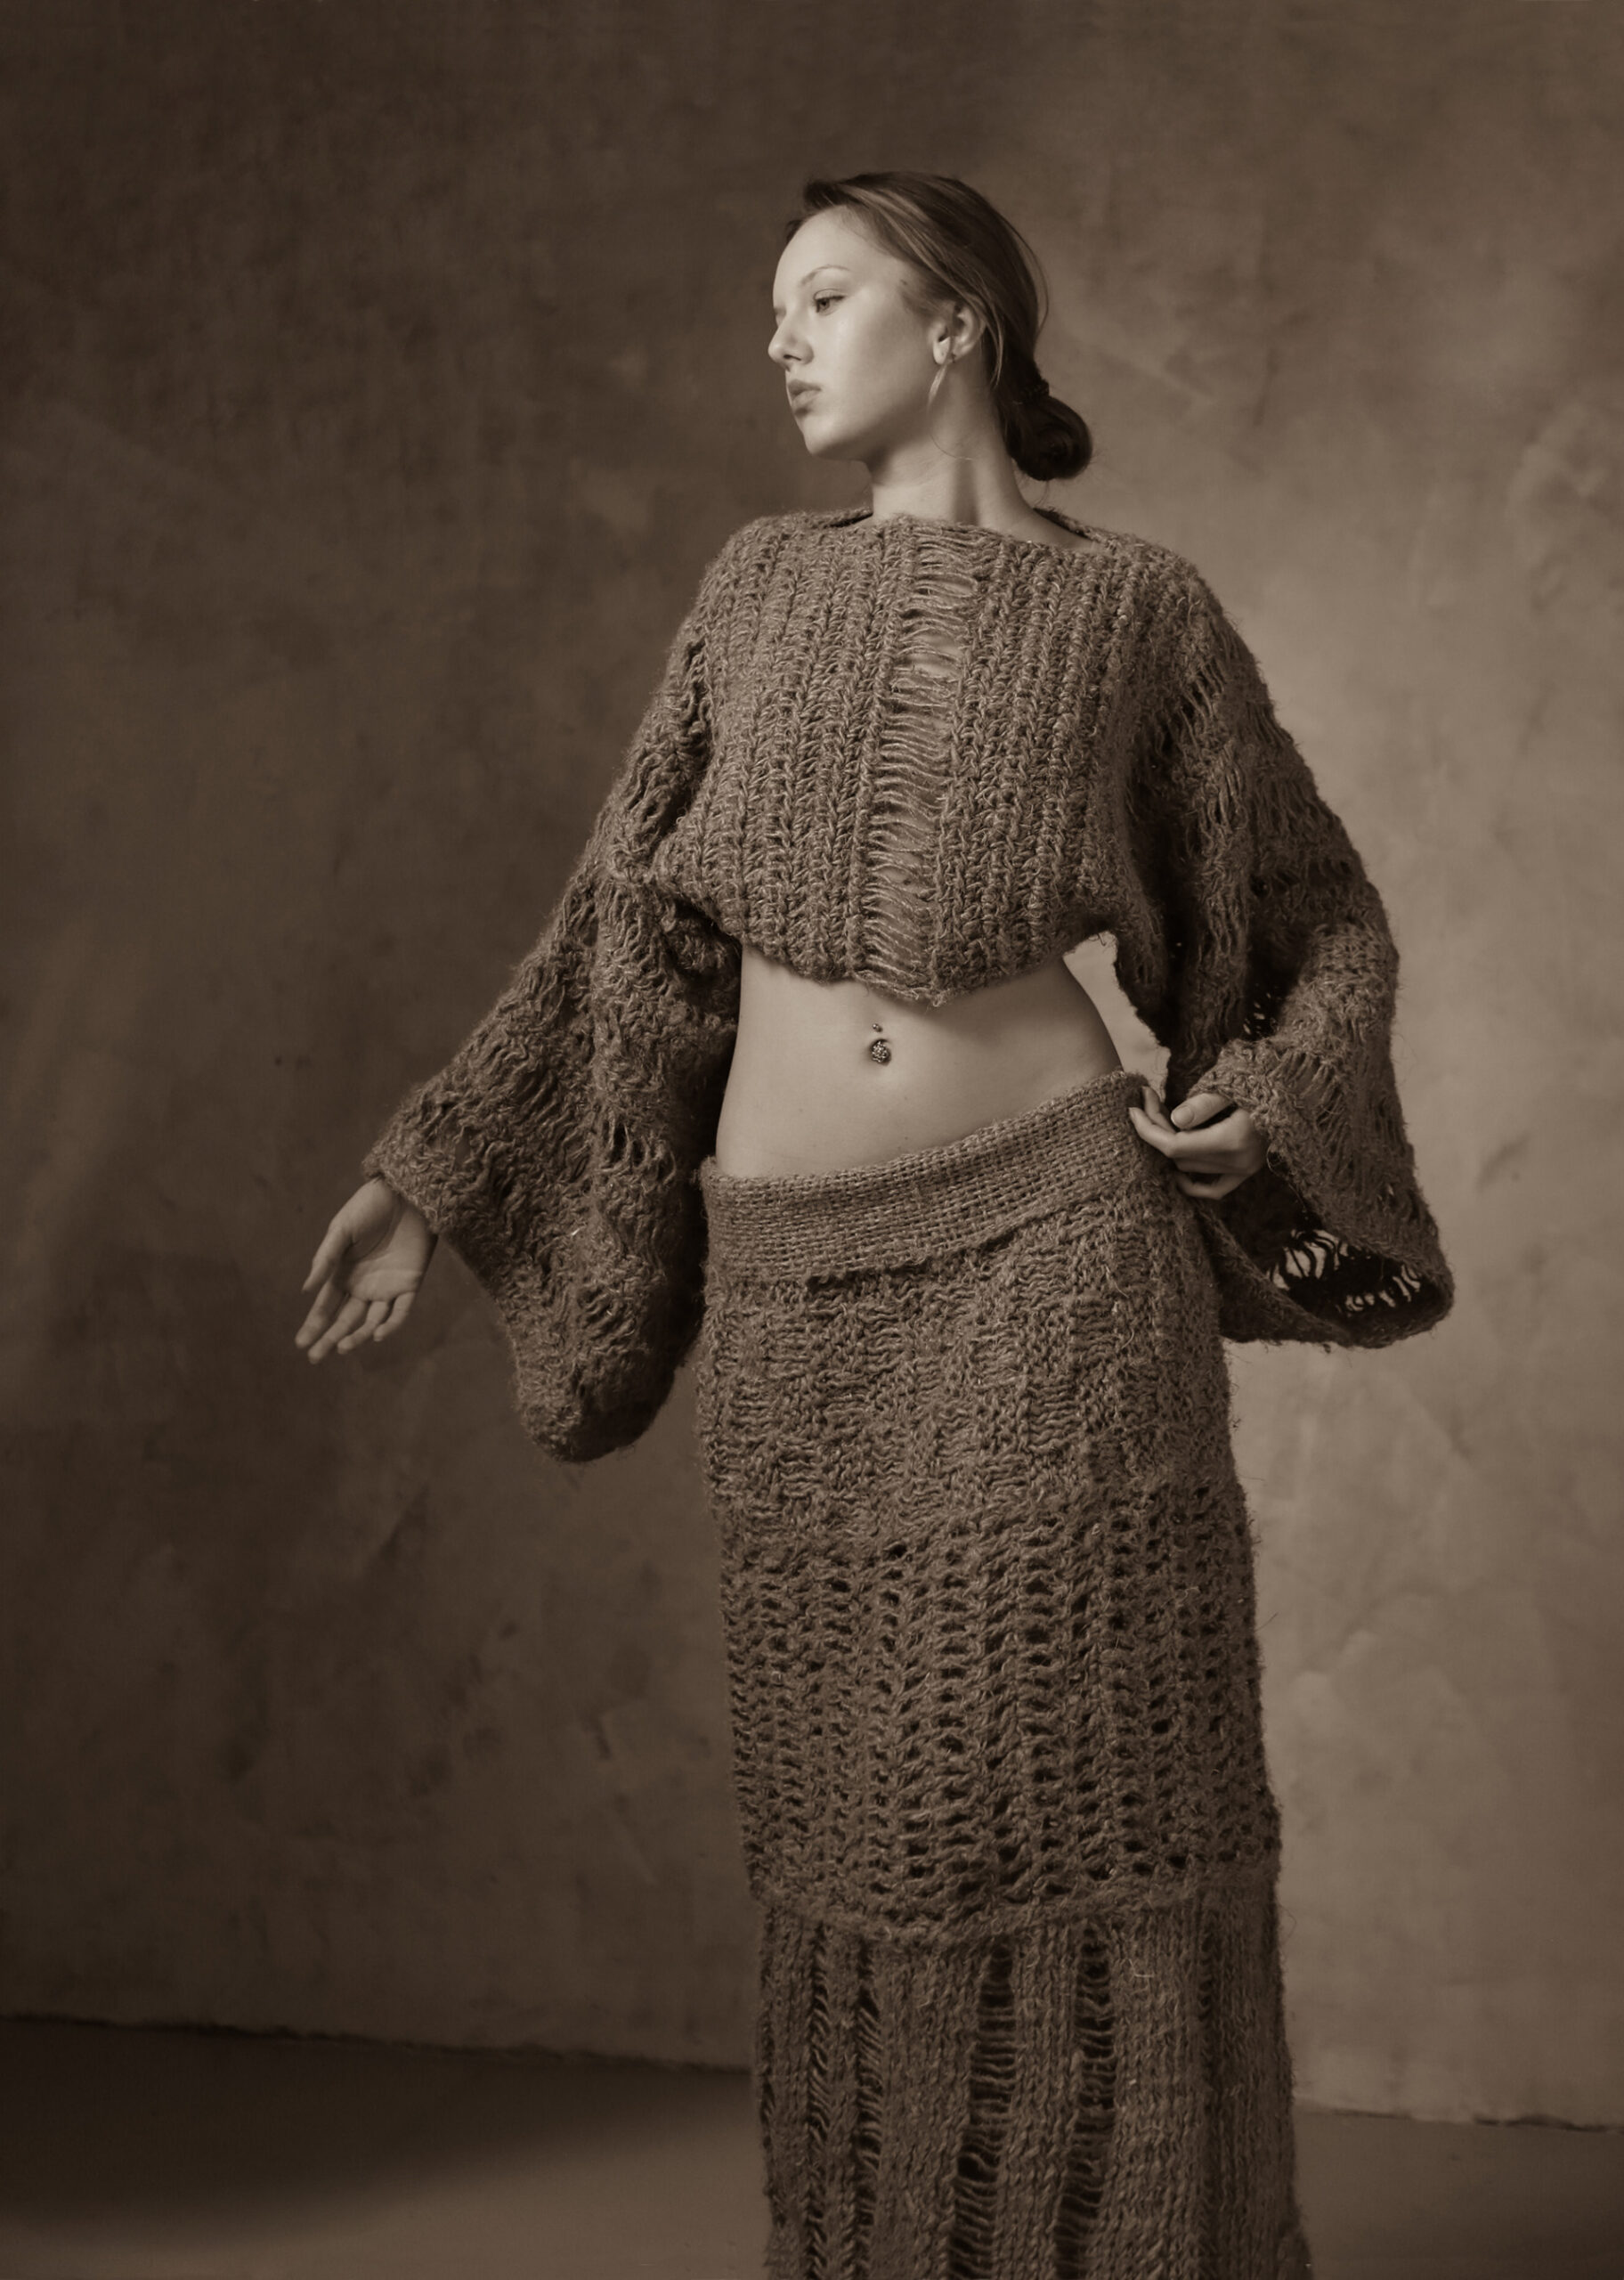 Zdjęcie w sepii. Kobieta widoczna od przodu, patrząca lekko w bok. Ubrana w komplet dziergany ze sznurka. Krótka bluzka z obfitymi długimi rękawami i długa spódnica.